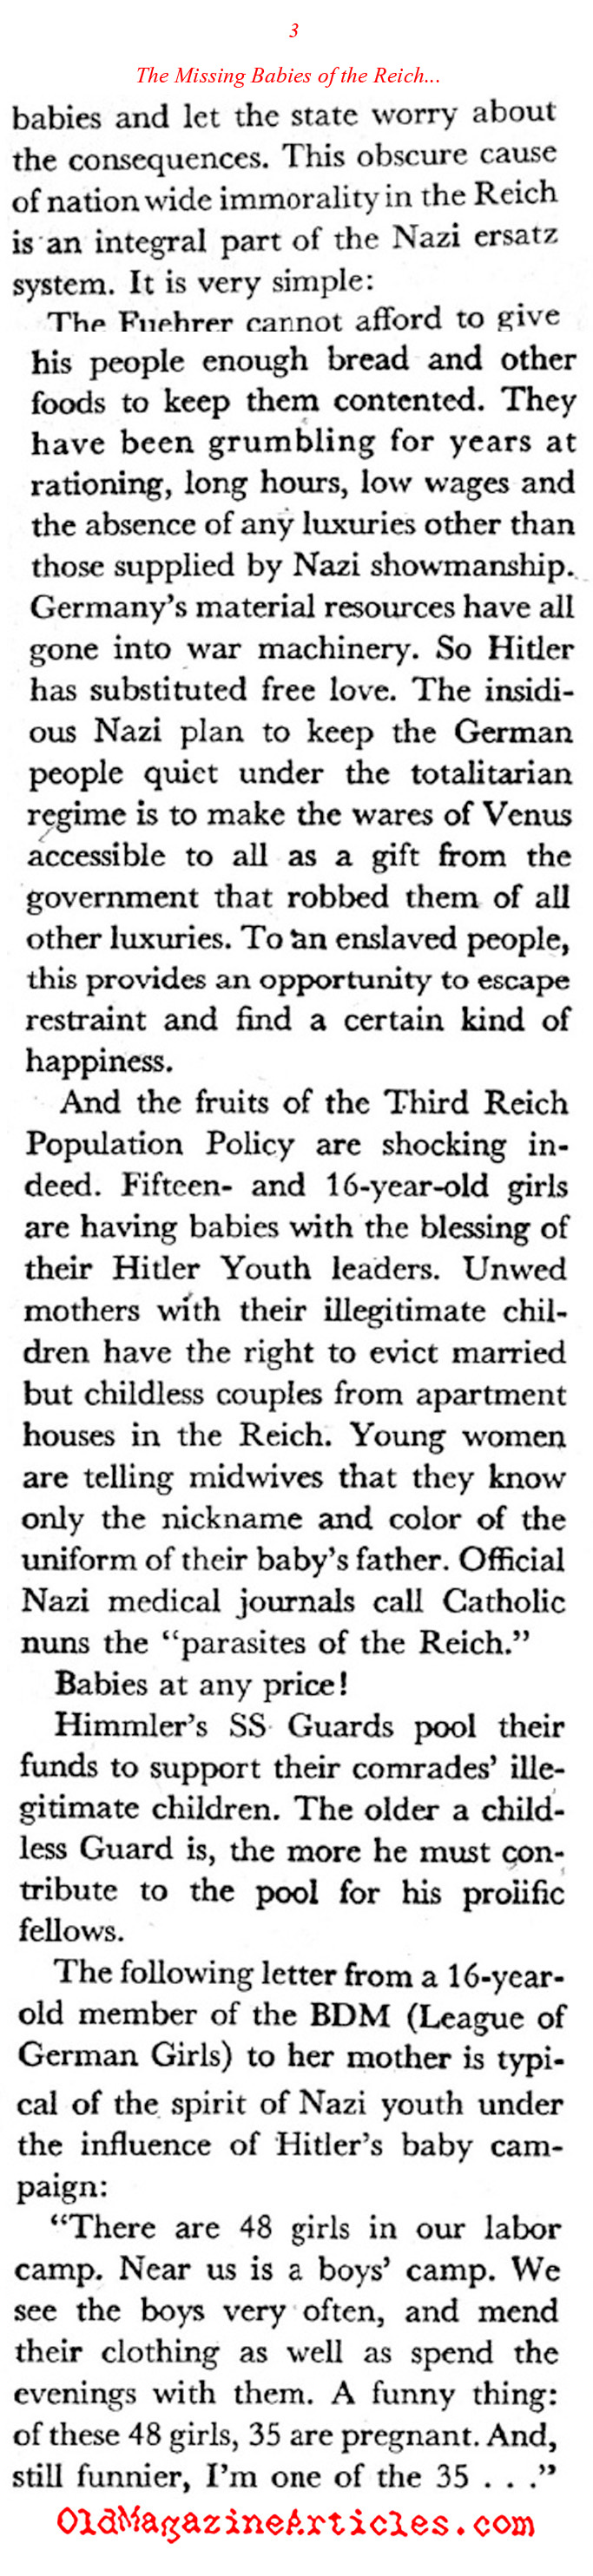 ''Healthy Eroticism'' in the Third Reich (Coronet Magazine, 1942)